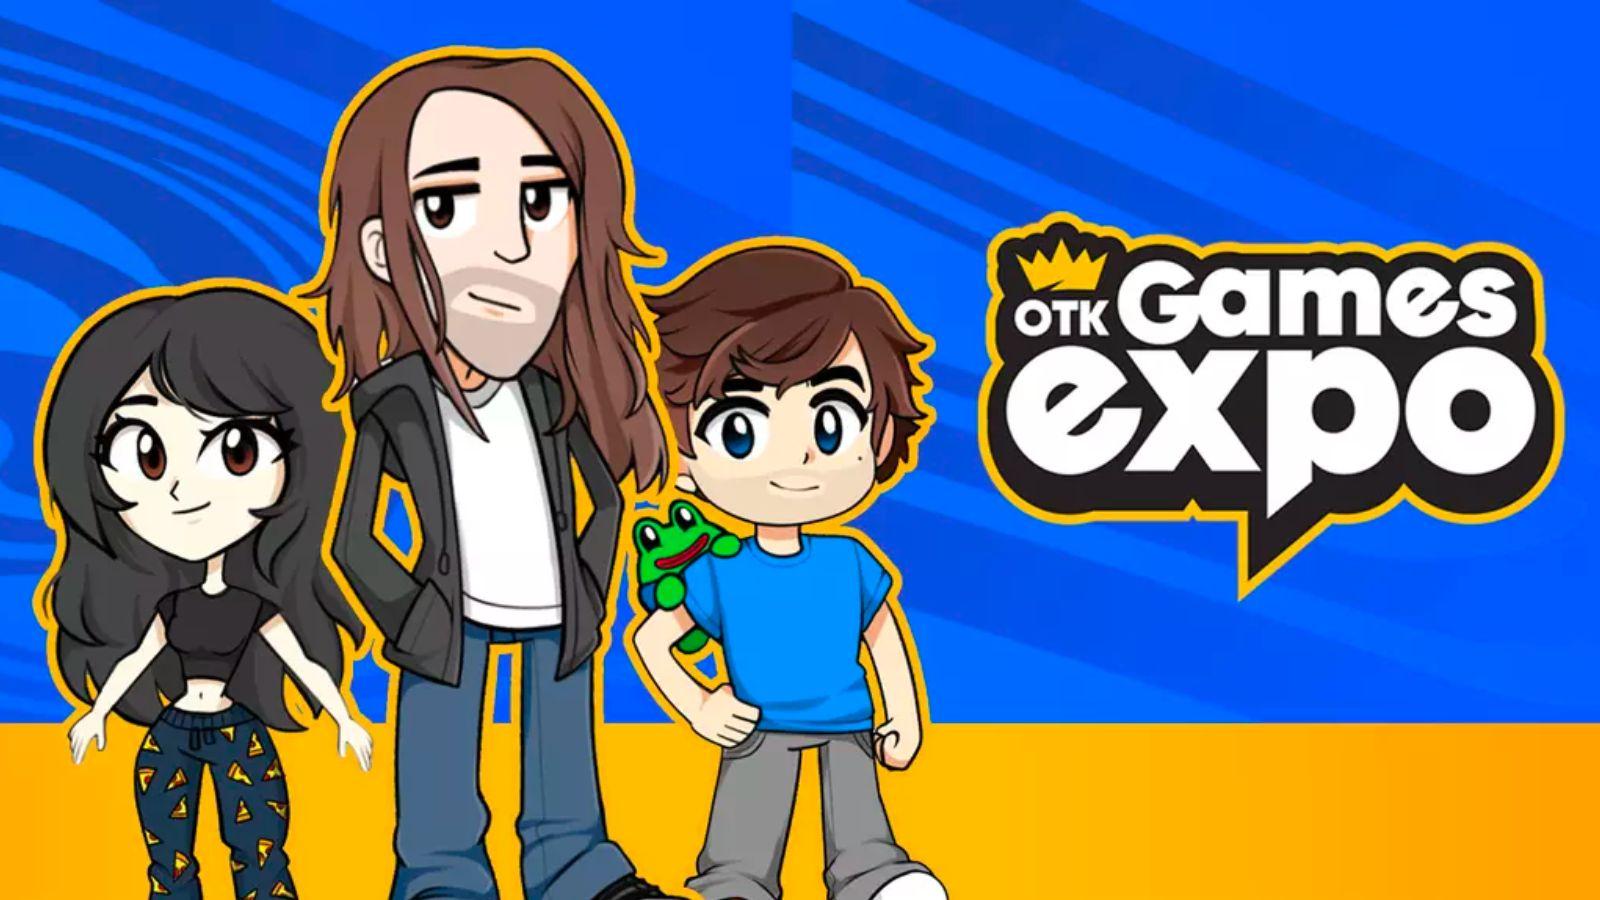 OTK Games Expo logo